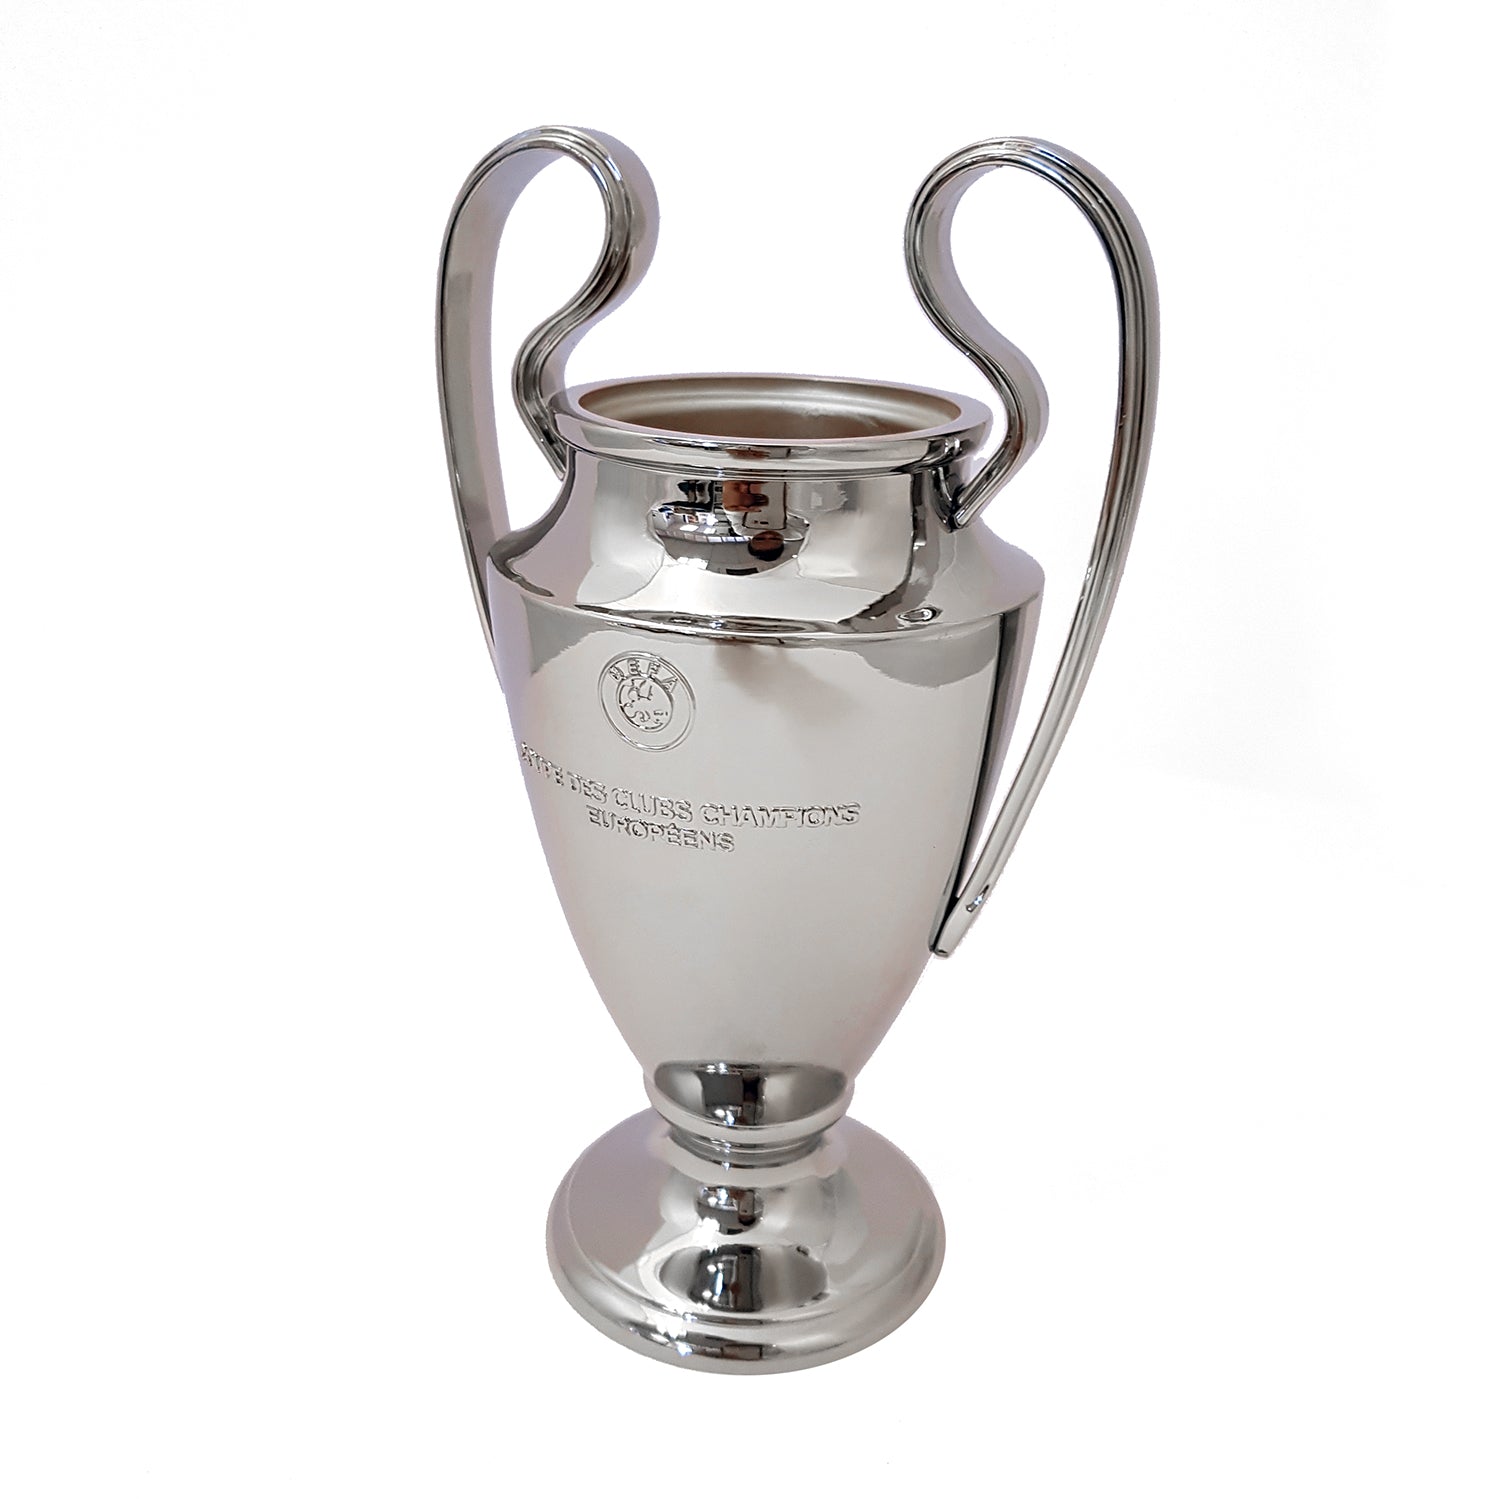 Liga de Campeones de la UEFA - Póster icónico de trofeos - Real Madrid CF -  2021/22